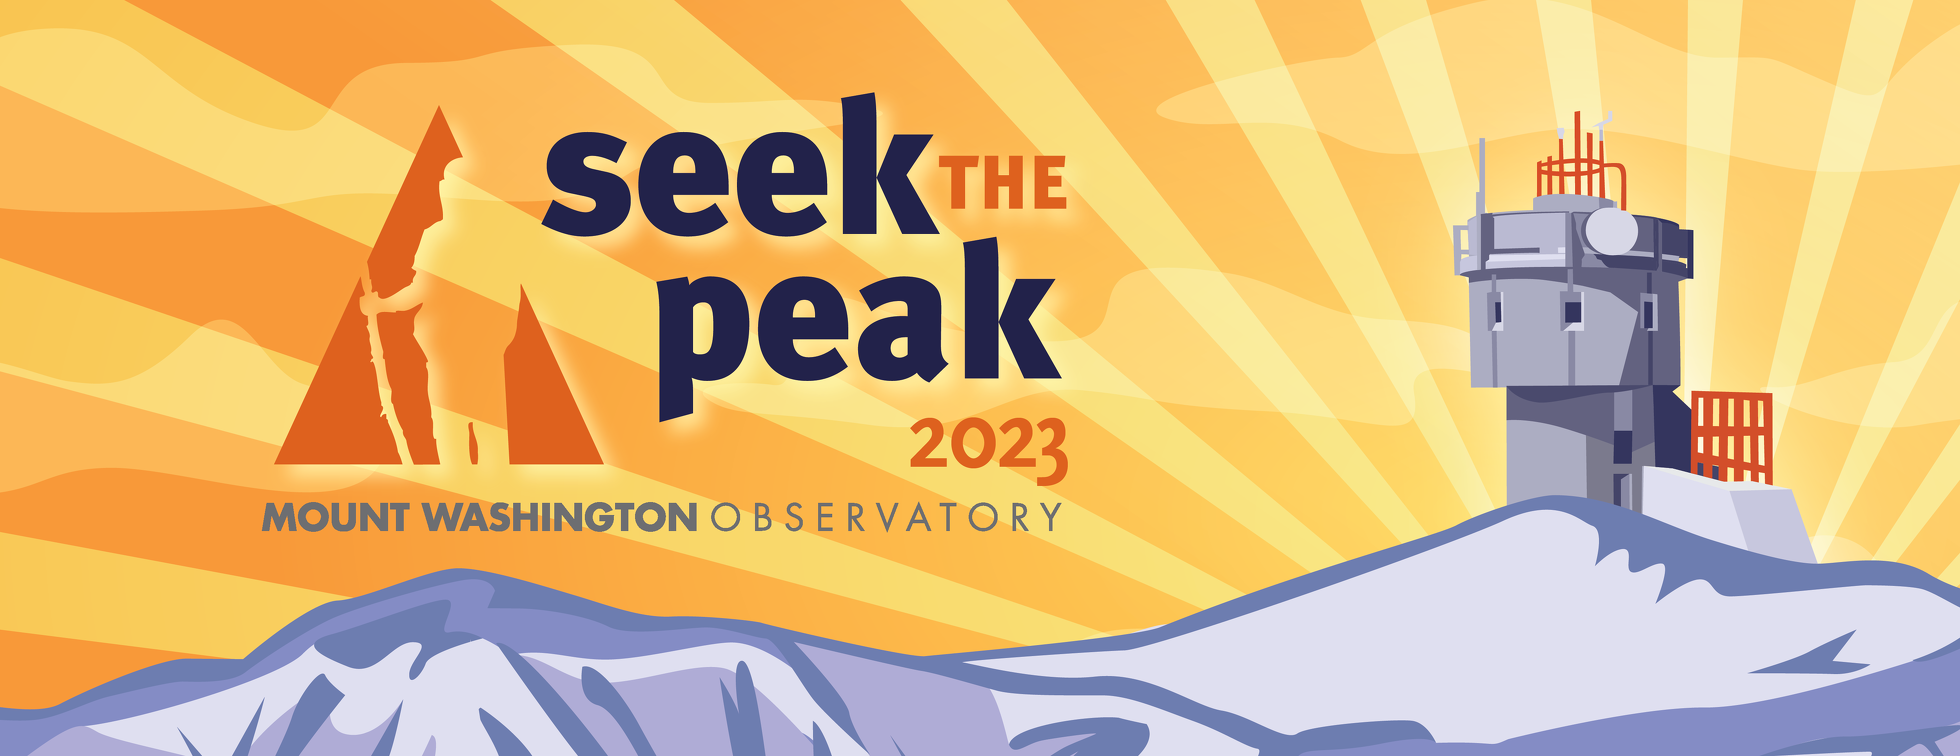 Seek the Peak 2023